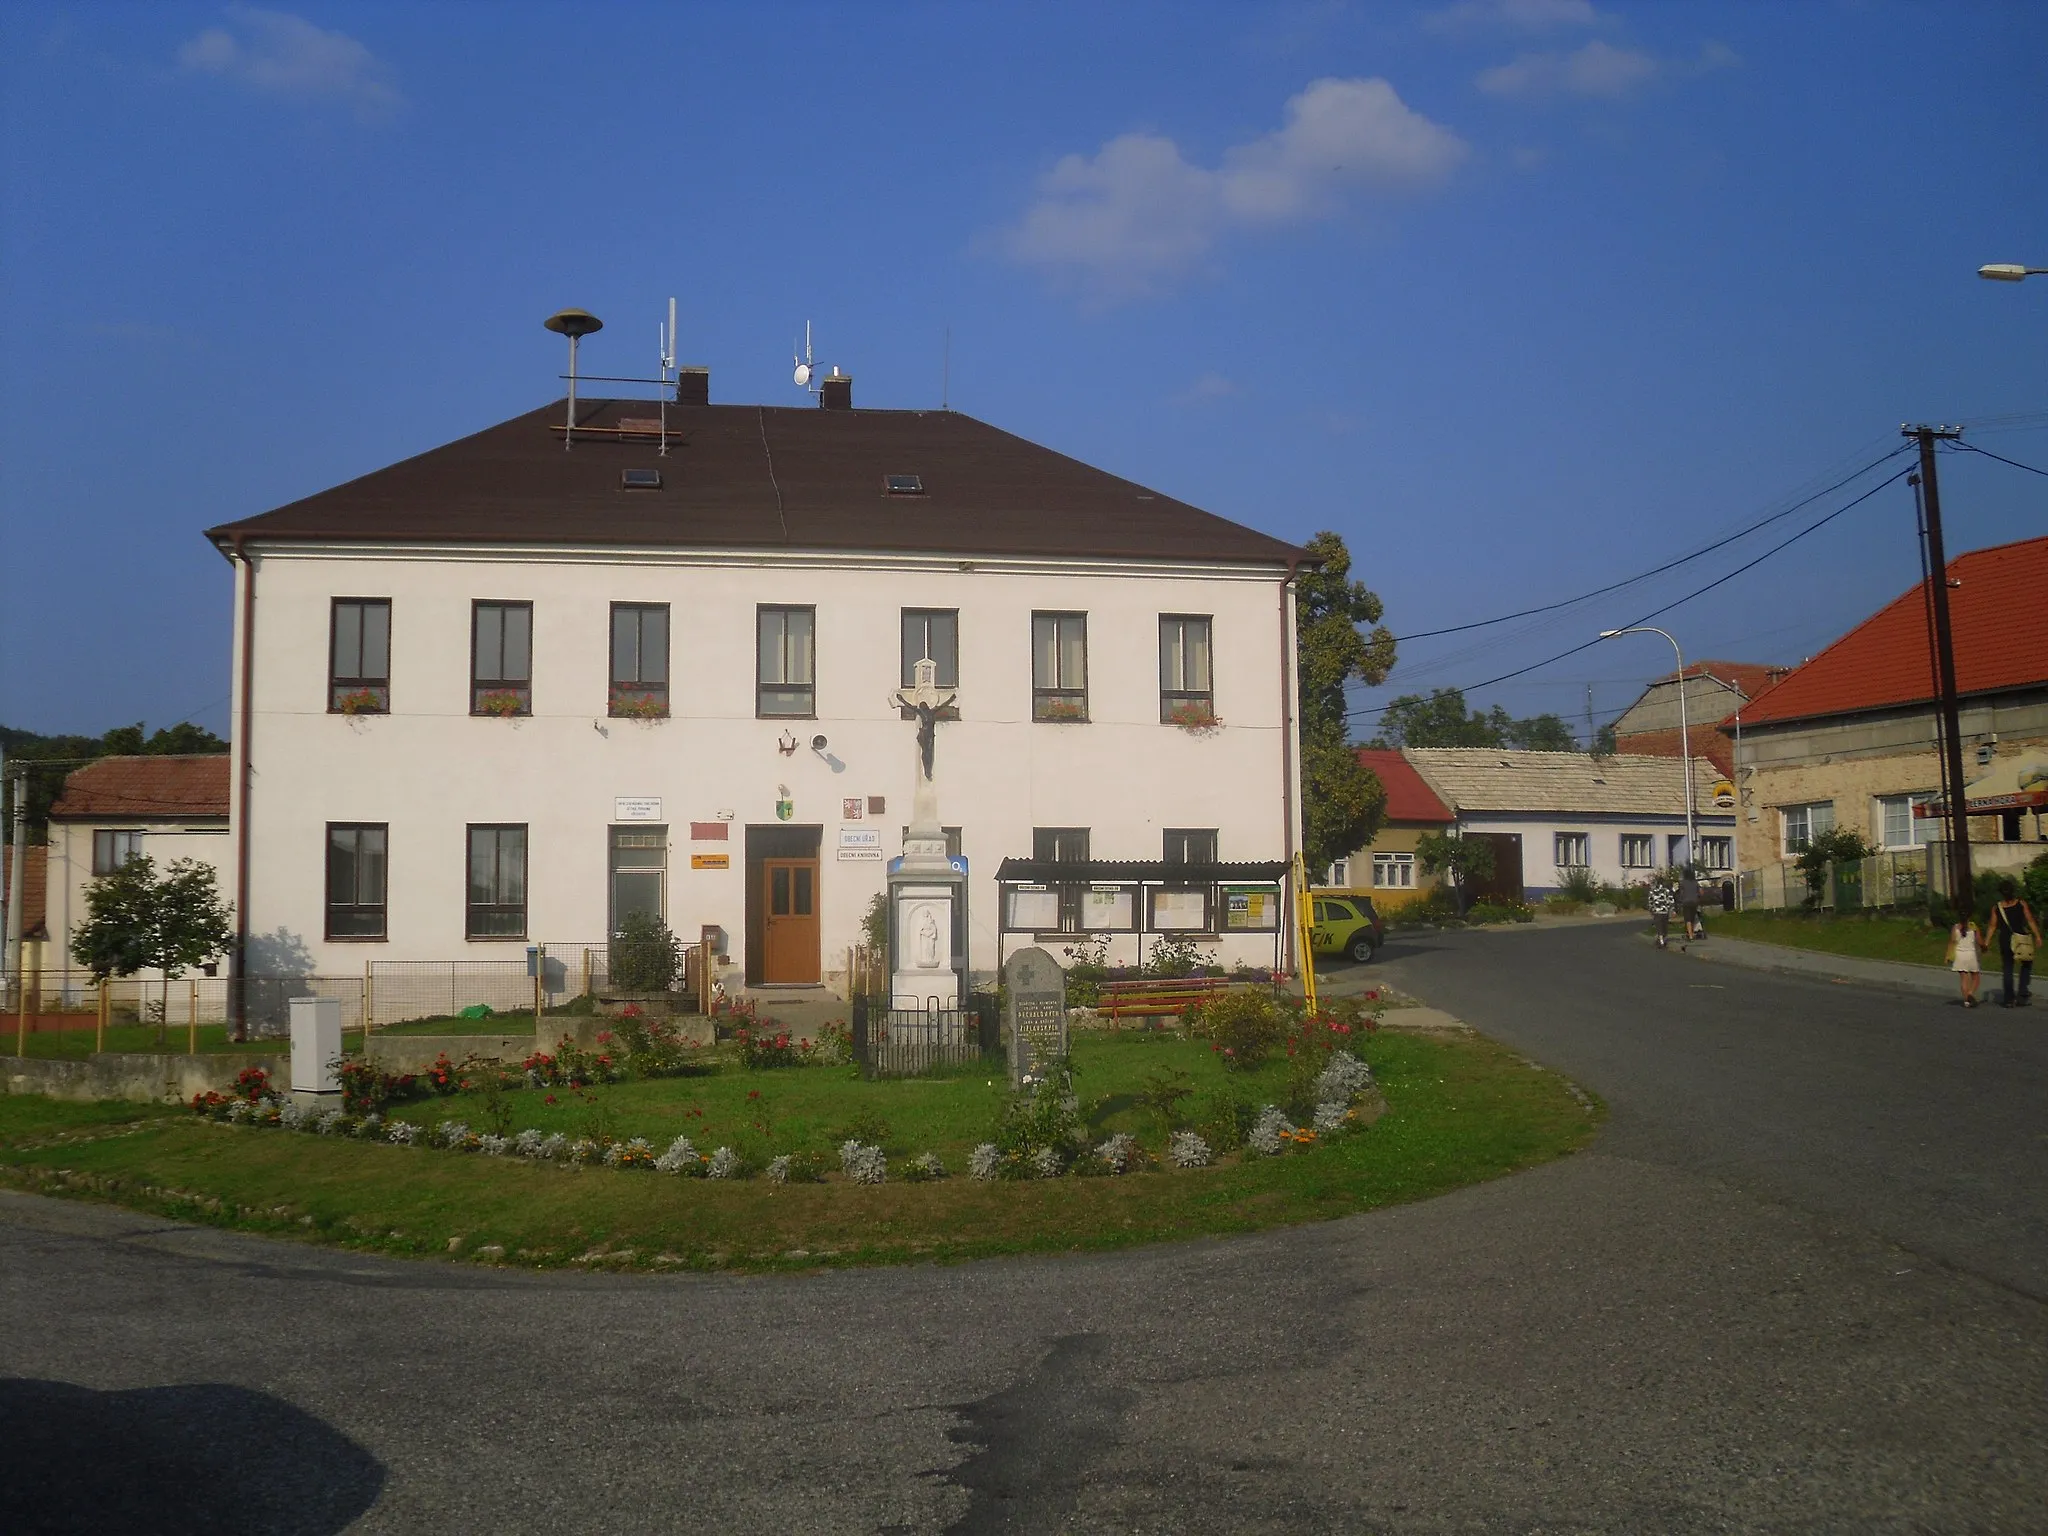 Photo showing: Vřesovice, Hodonín district, Czech Republic - municipal office and post office